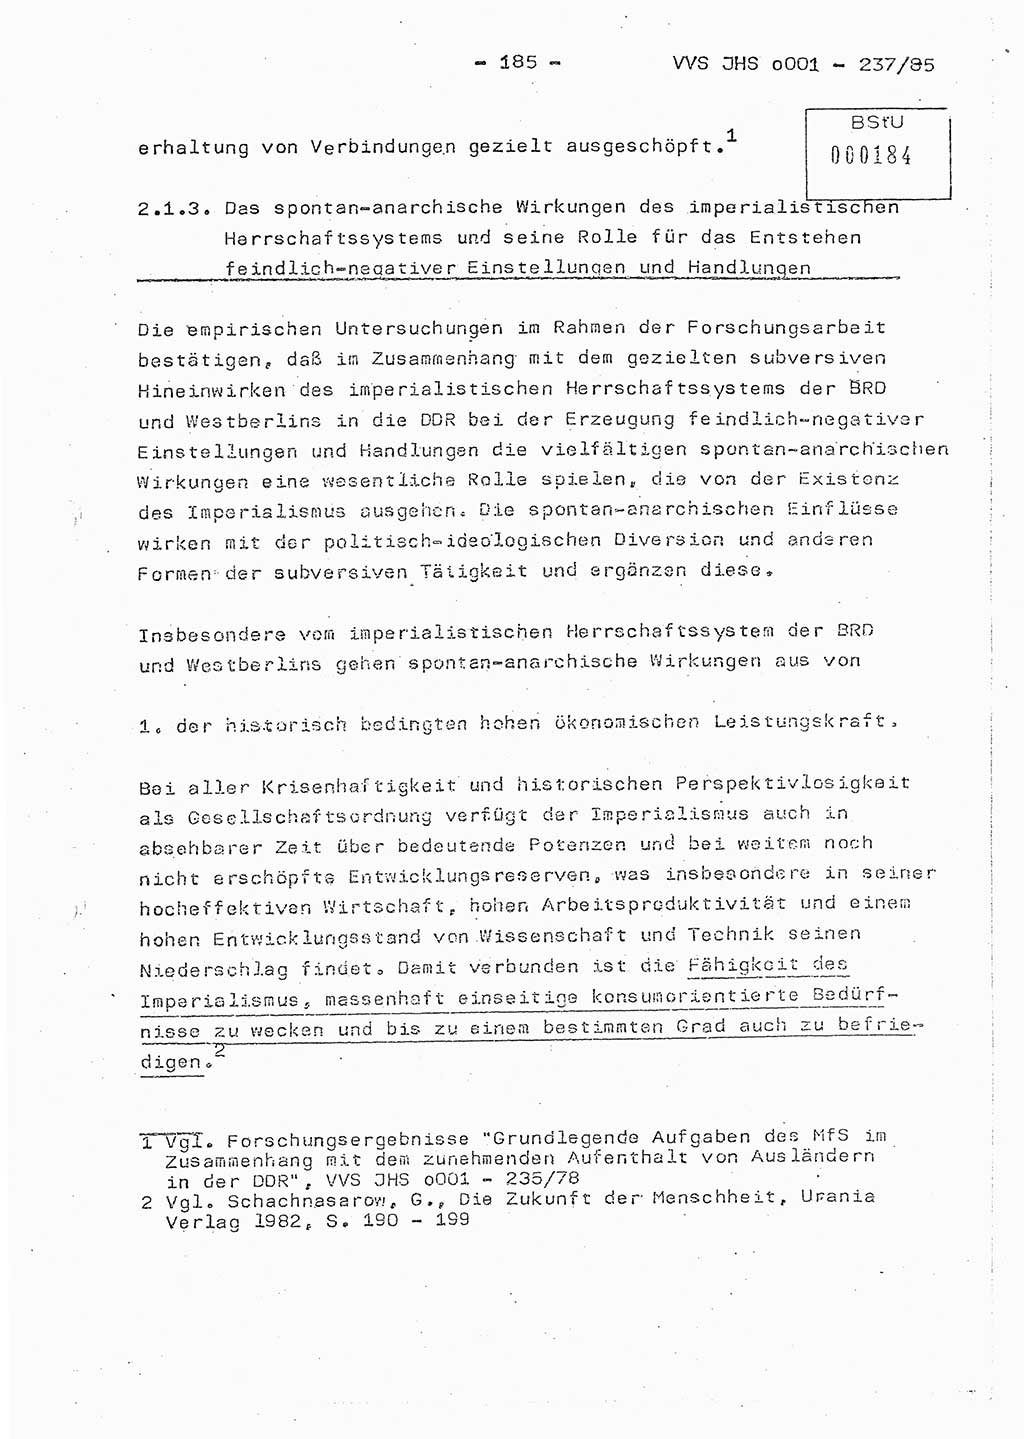 Dissertation Oberstleutnant Peter Jakulski (JHS), Oberstleutnat Christian Rudolph (HA Ⅸ), Major Horst Böttger (ZMD), Major Wolfgang Grüneberg (JHS), Major Albert Meutsch (JHS), Ministerium für Staatssicherheit (MfS) [Deutsche Demokratische Republik (DDR)], Juristische Hochschule (JHS), Vertrauliche Verschlußsache (VVS) o001-237/85, Potsdam 1985, Seite 185 (Diss. MfS DDR JHS VVS o001-237/85 1985, S. 185)